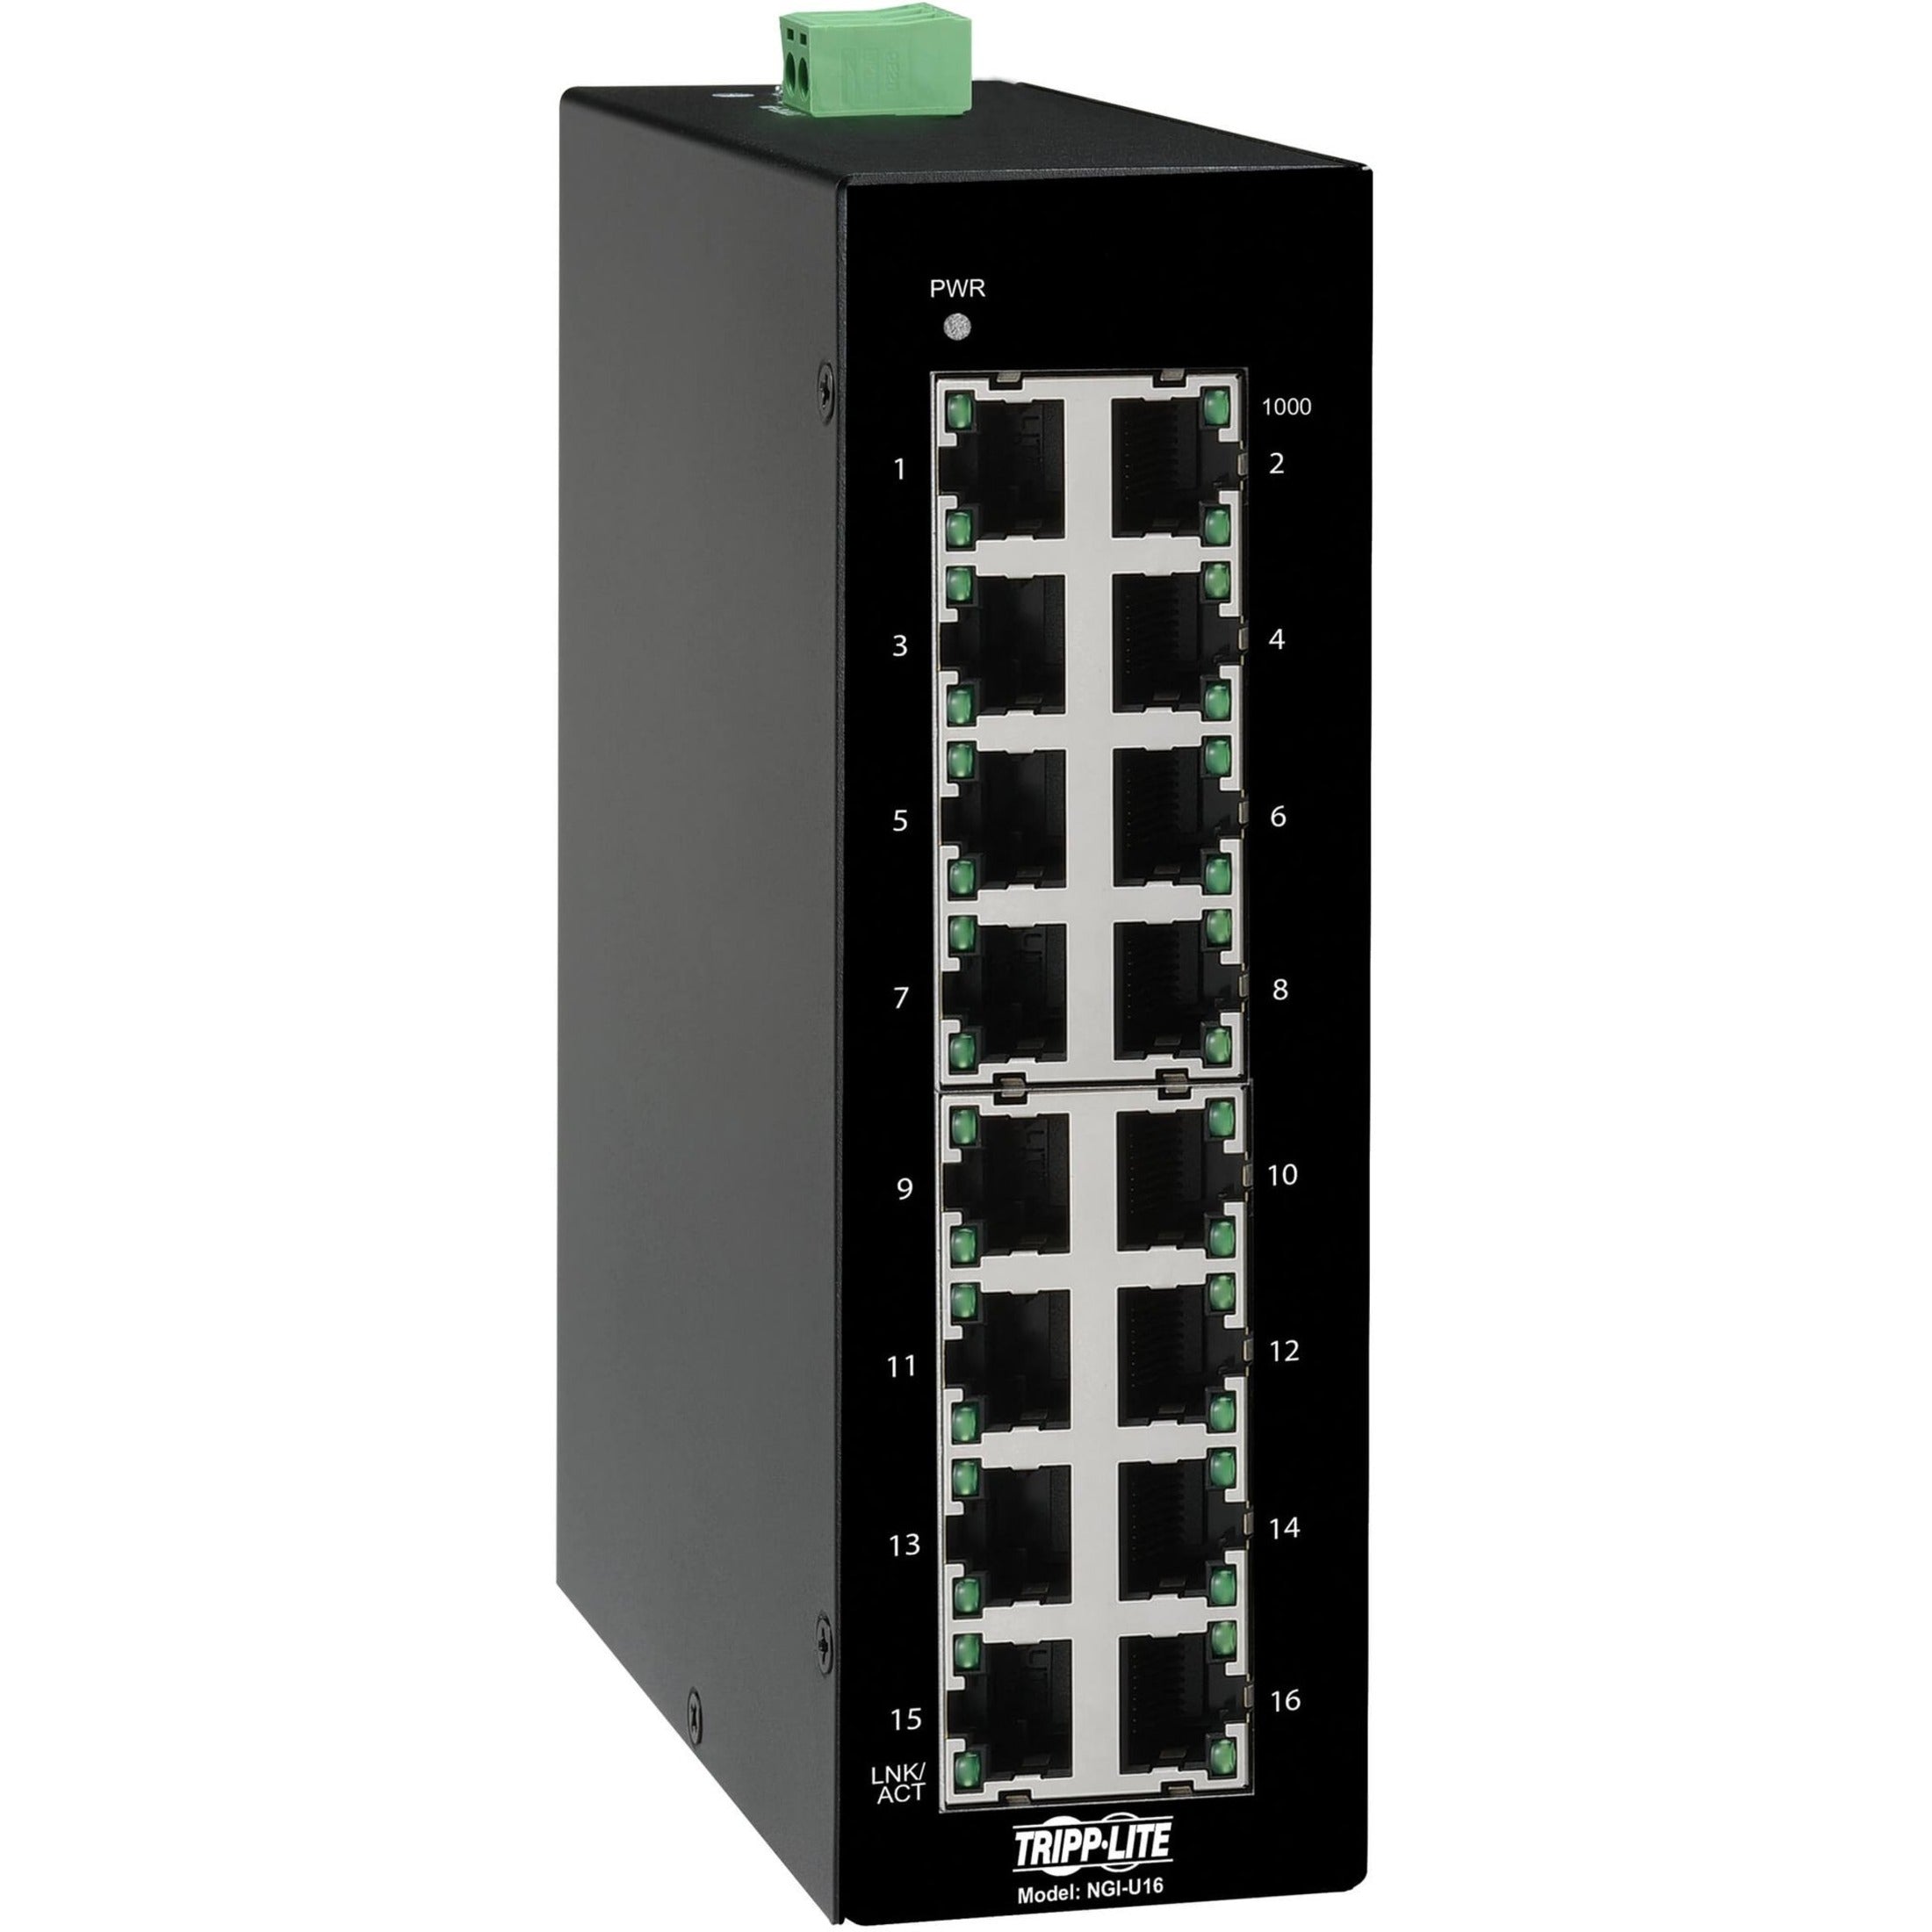 Tripp Lite NGI-U16 Ethernet Switch, Unmanaged 16-Port Industrial 10/100/1000 Mbps DIN